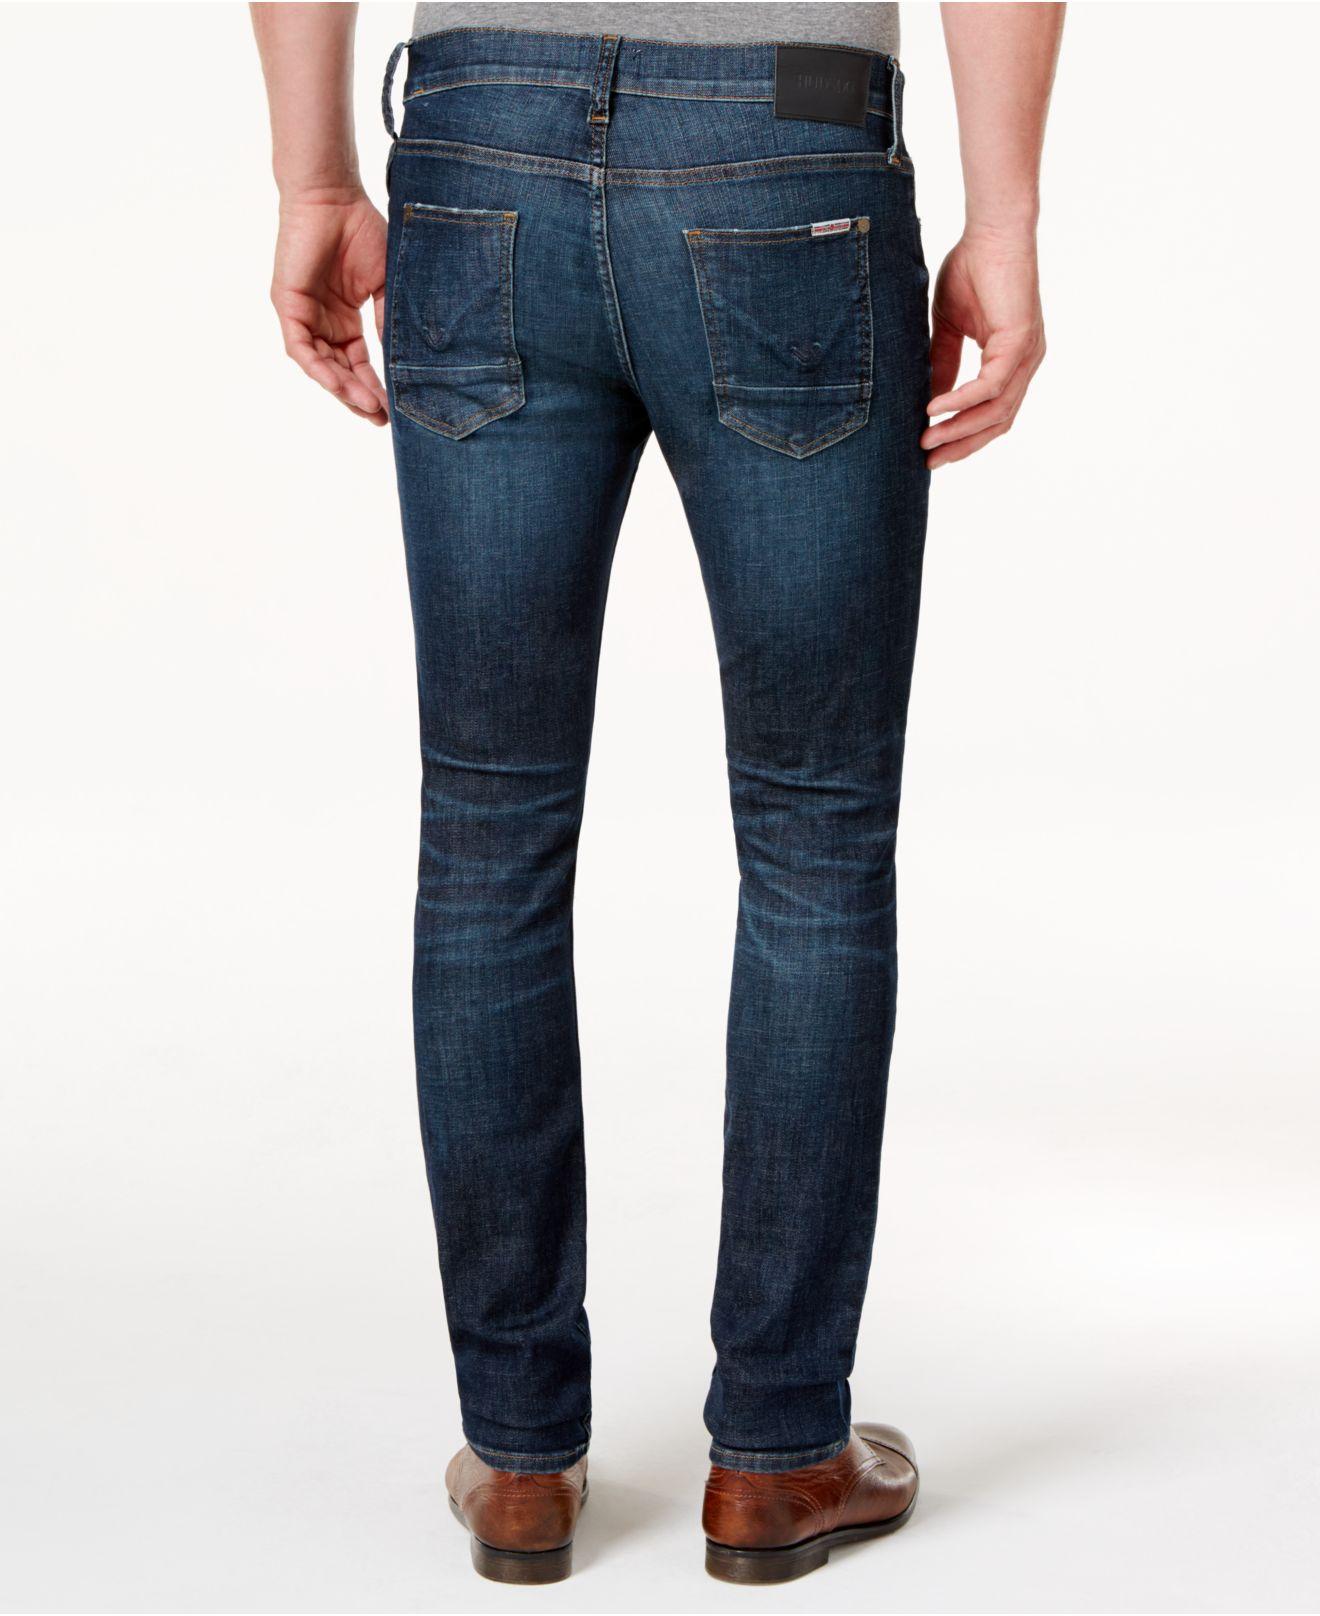 Lyst - Hudson Men's Slim Straight Jeans in Blue for Men